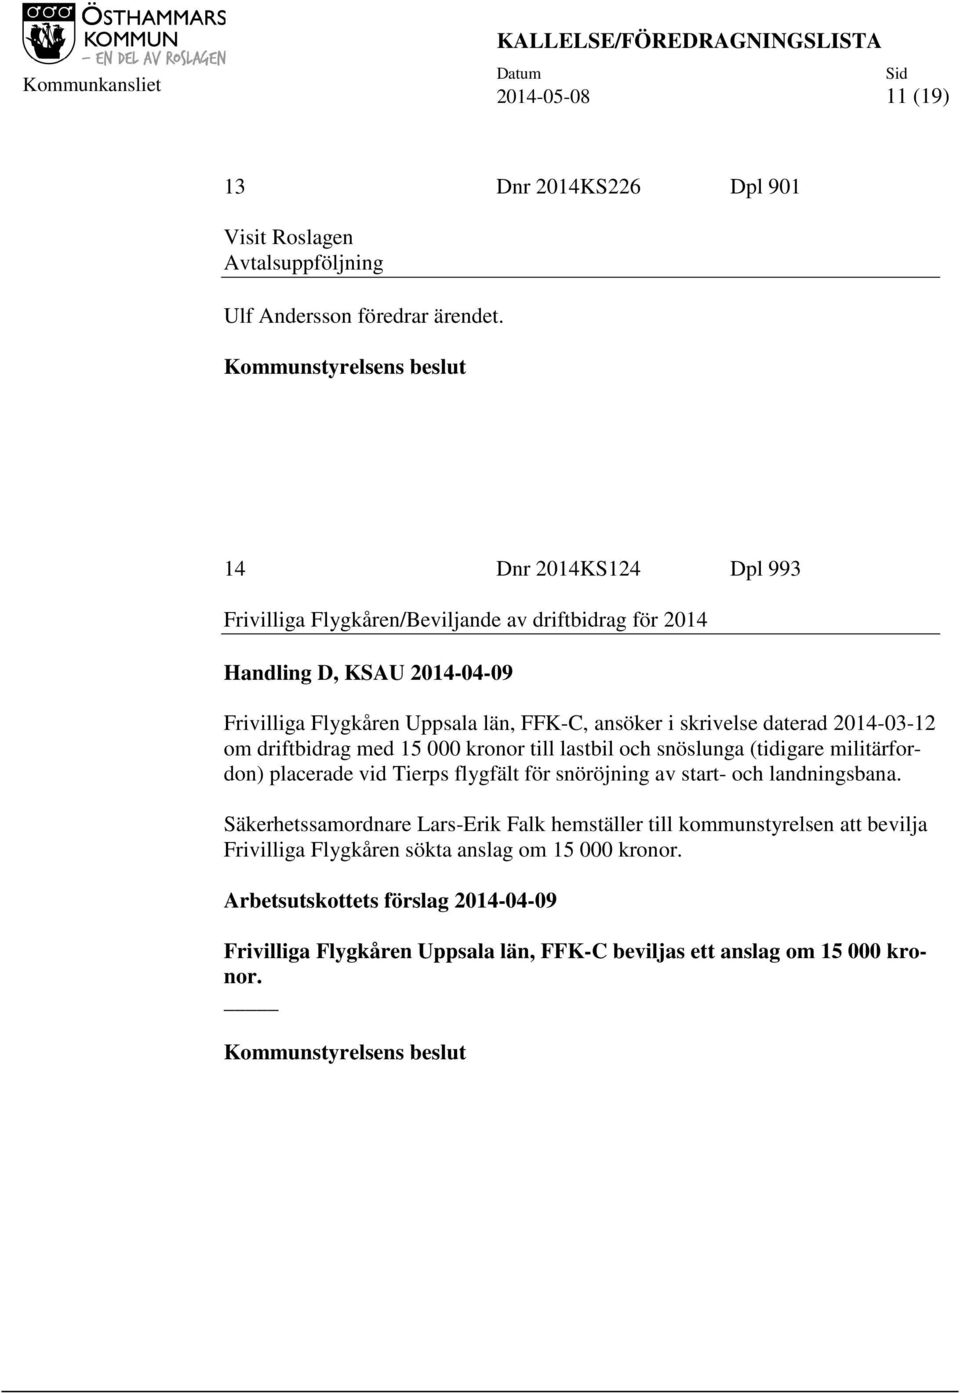 daterad 2014-03-12 om driftbidrag med 15 000 kronor till lastbil och snöslunga (tidigare militärfordon) placerade vid Tierps flygfält för snöröjning av start- och